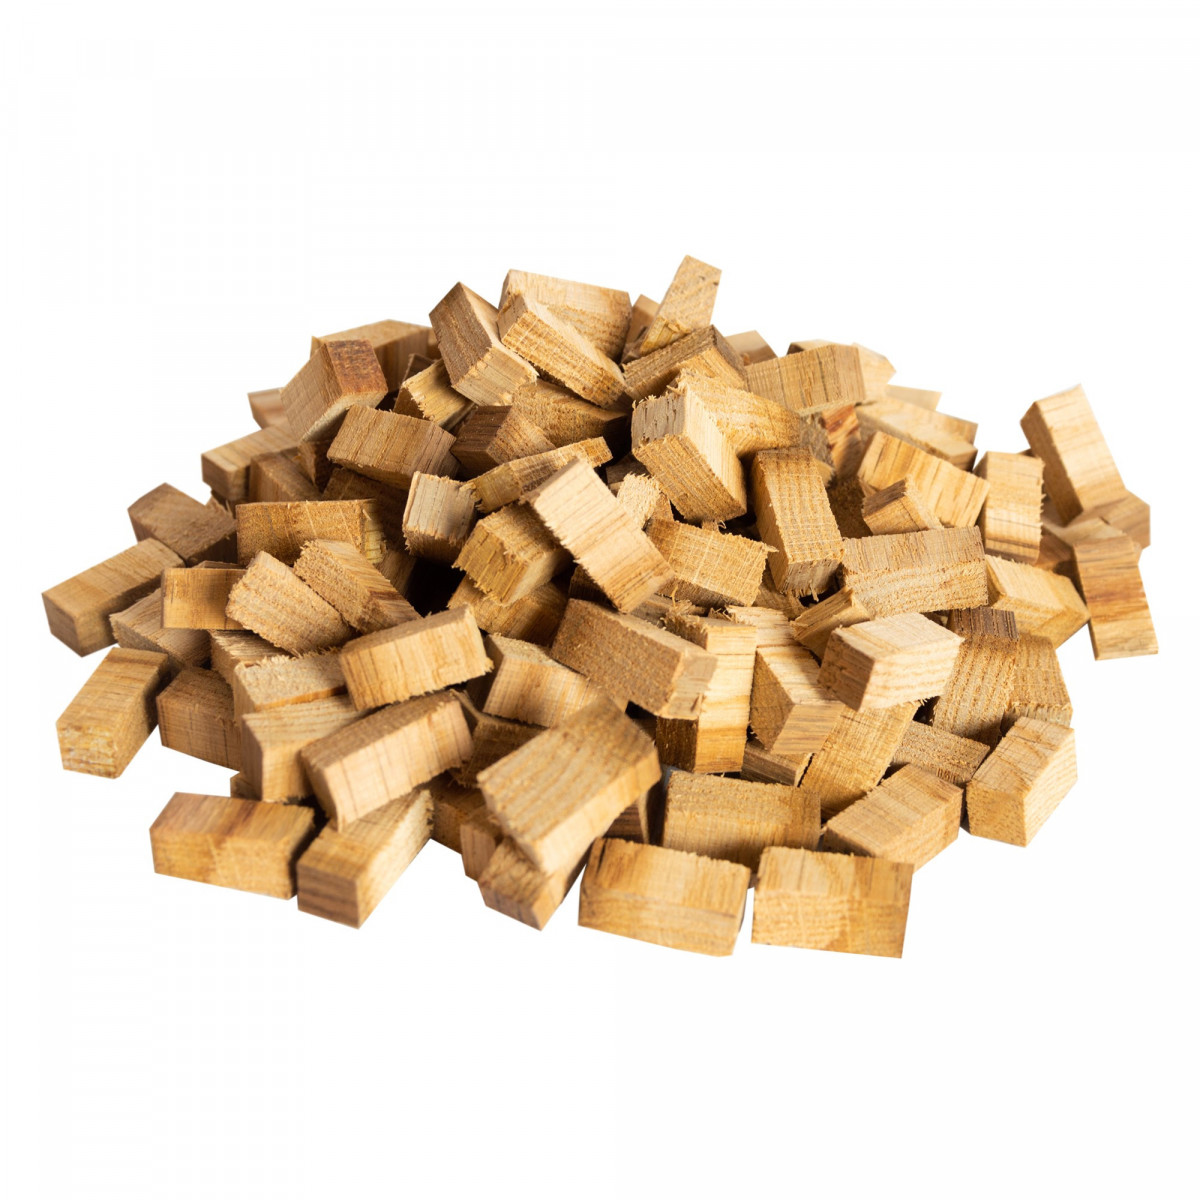 Cubes de bois de chêne whisky 250 g